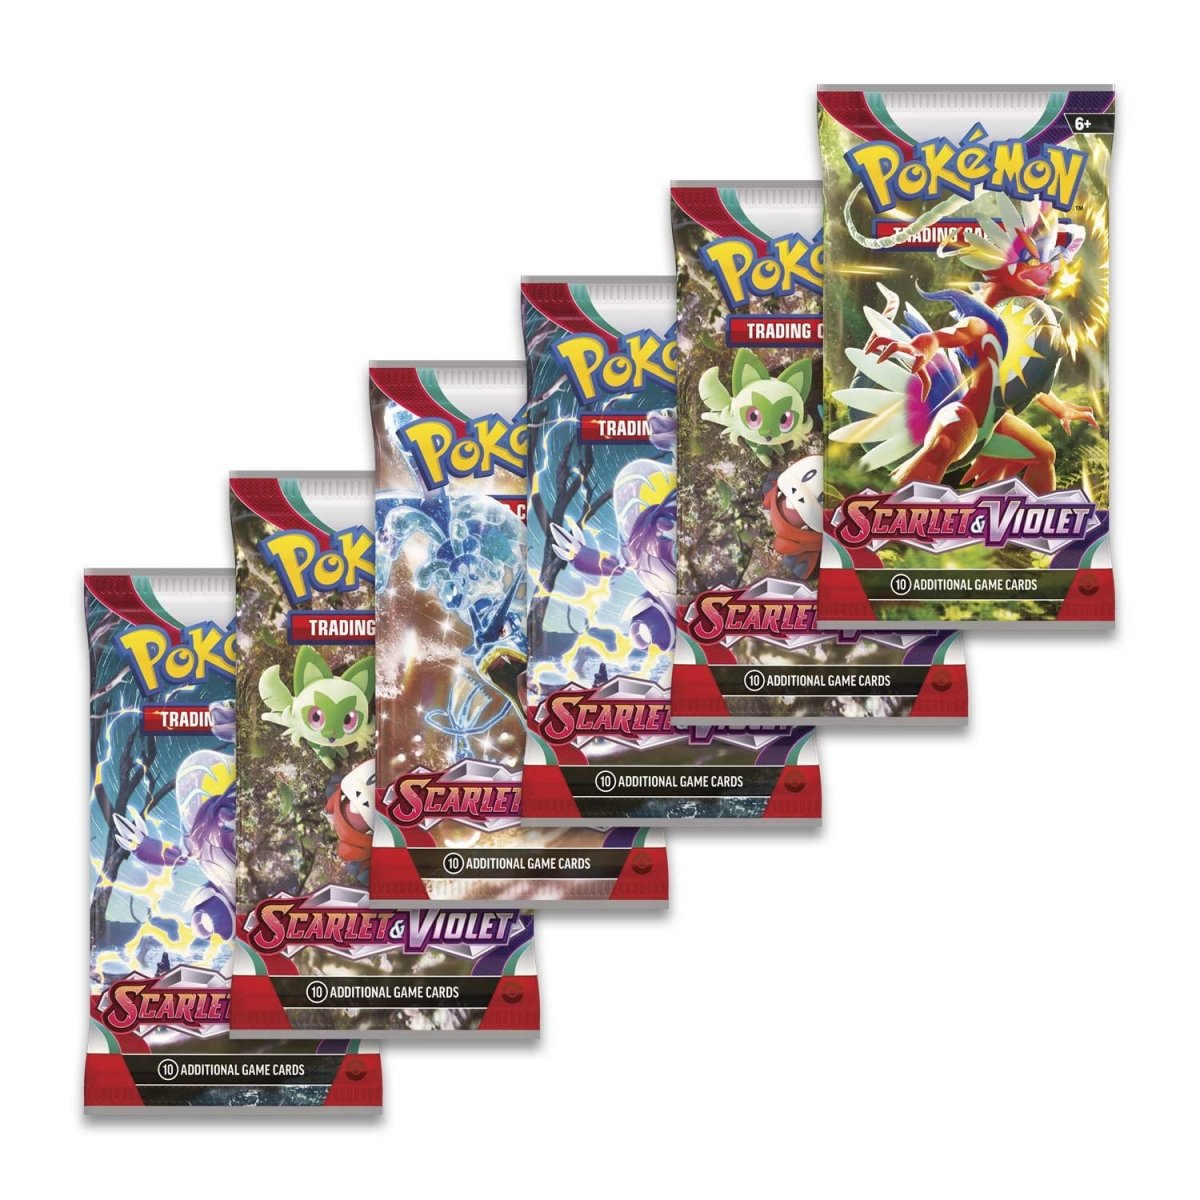 Pokémon - Scarlet and Violet, Booster Bundle (6 packs)